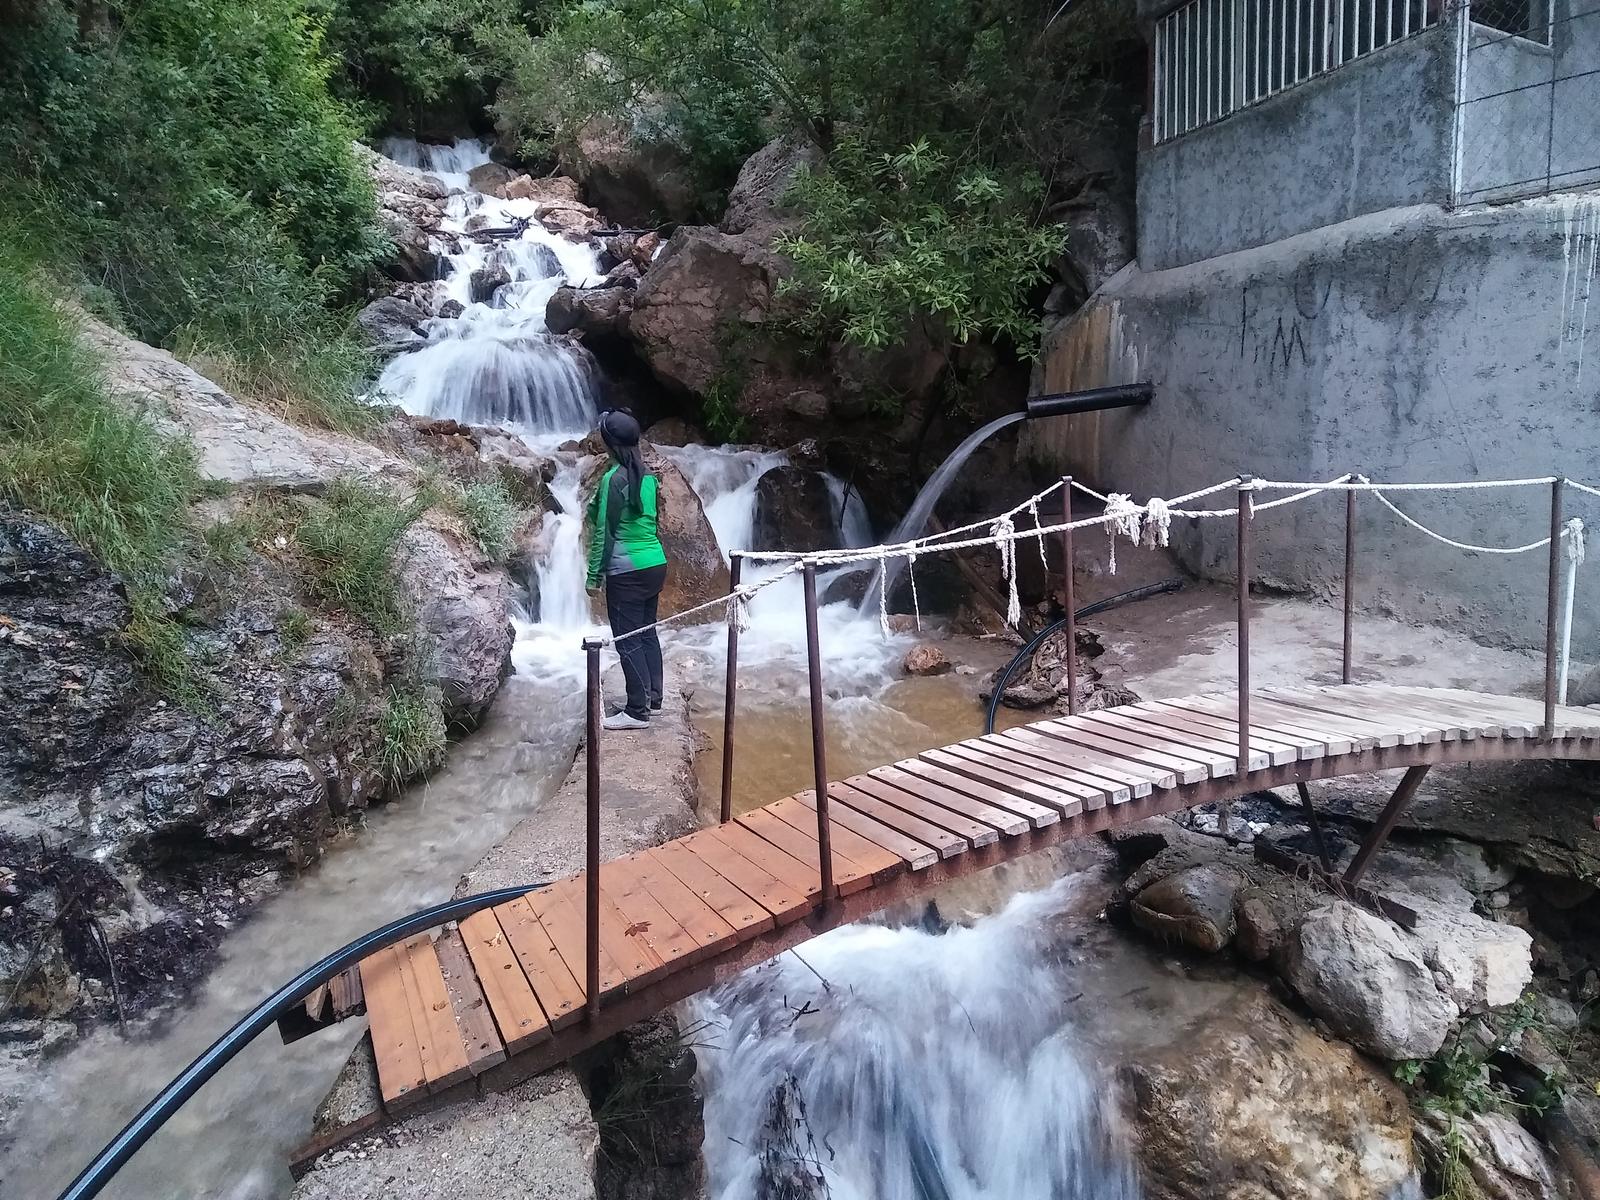 مسیر آبشار ترا, Route of Tera Waterfall